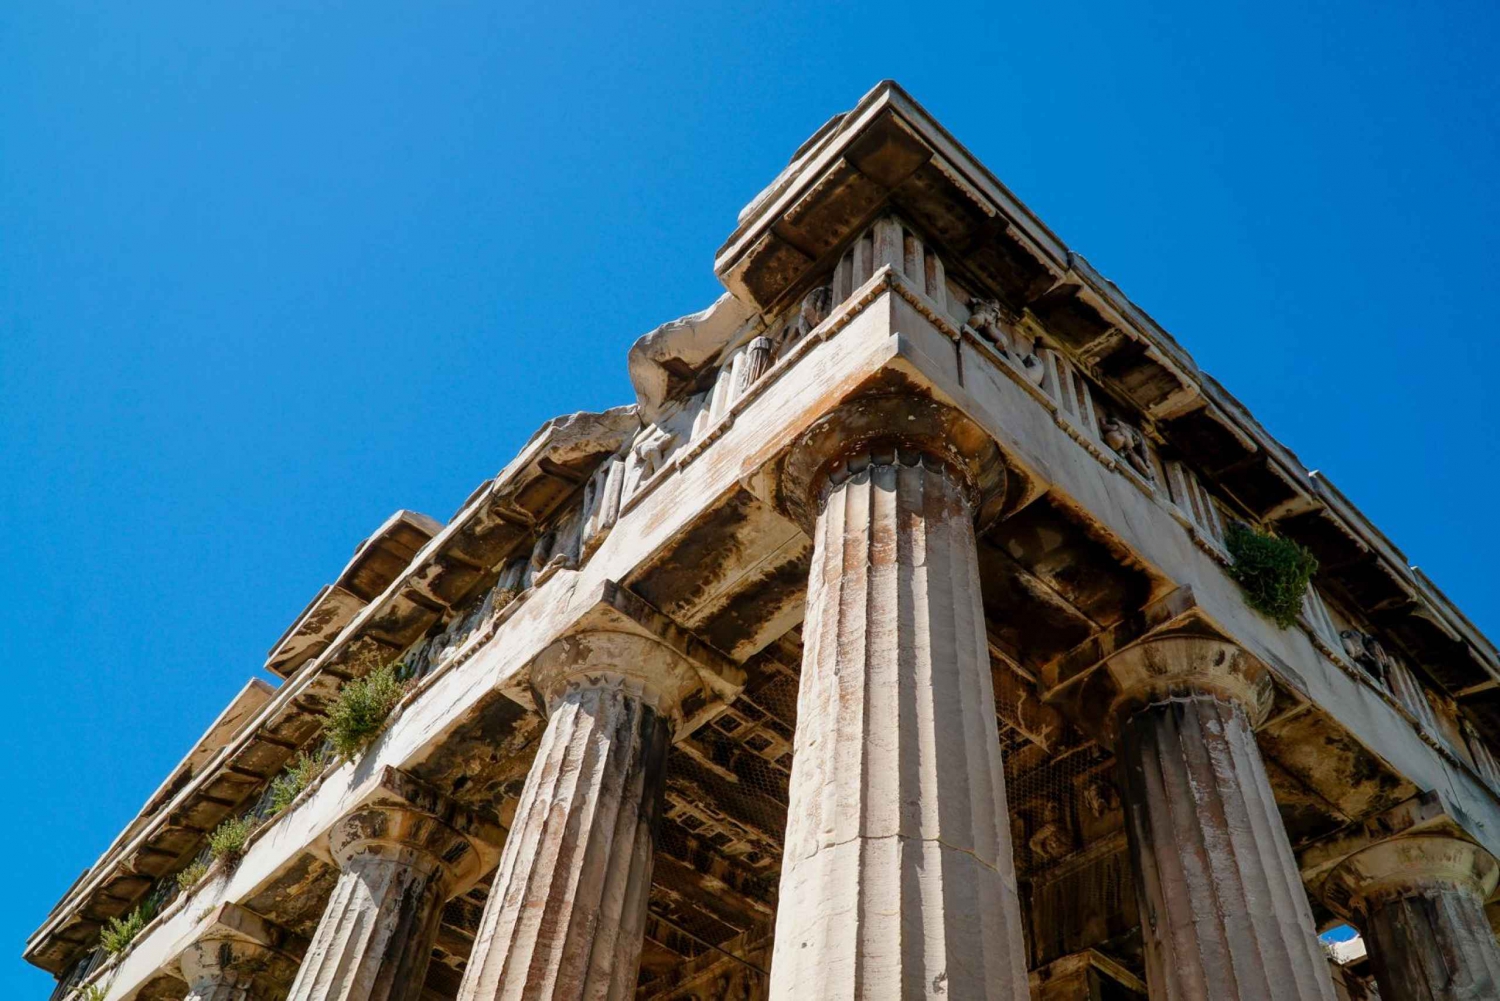 Athens: Acropolis & 6 Sites Ticket Pass with 5 Audio Tours